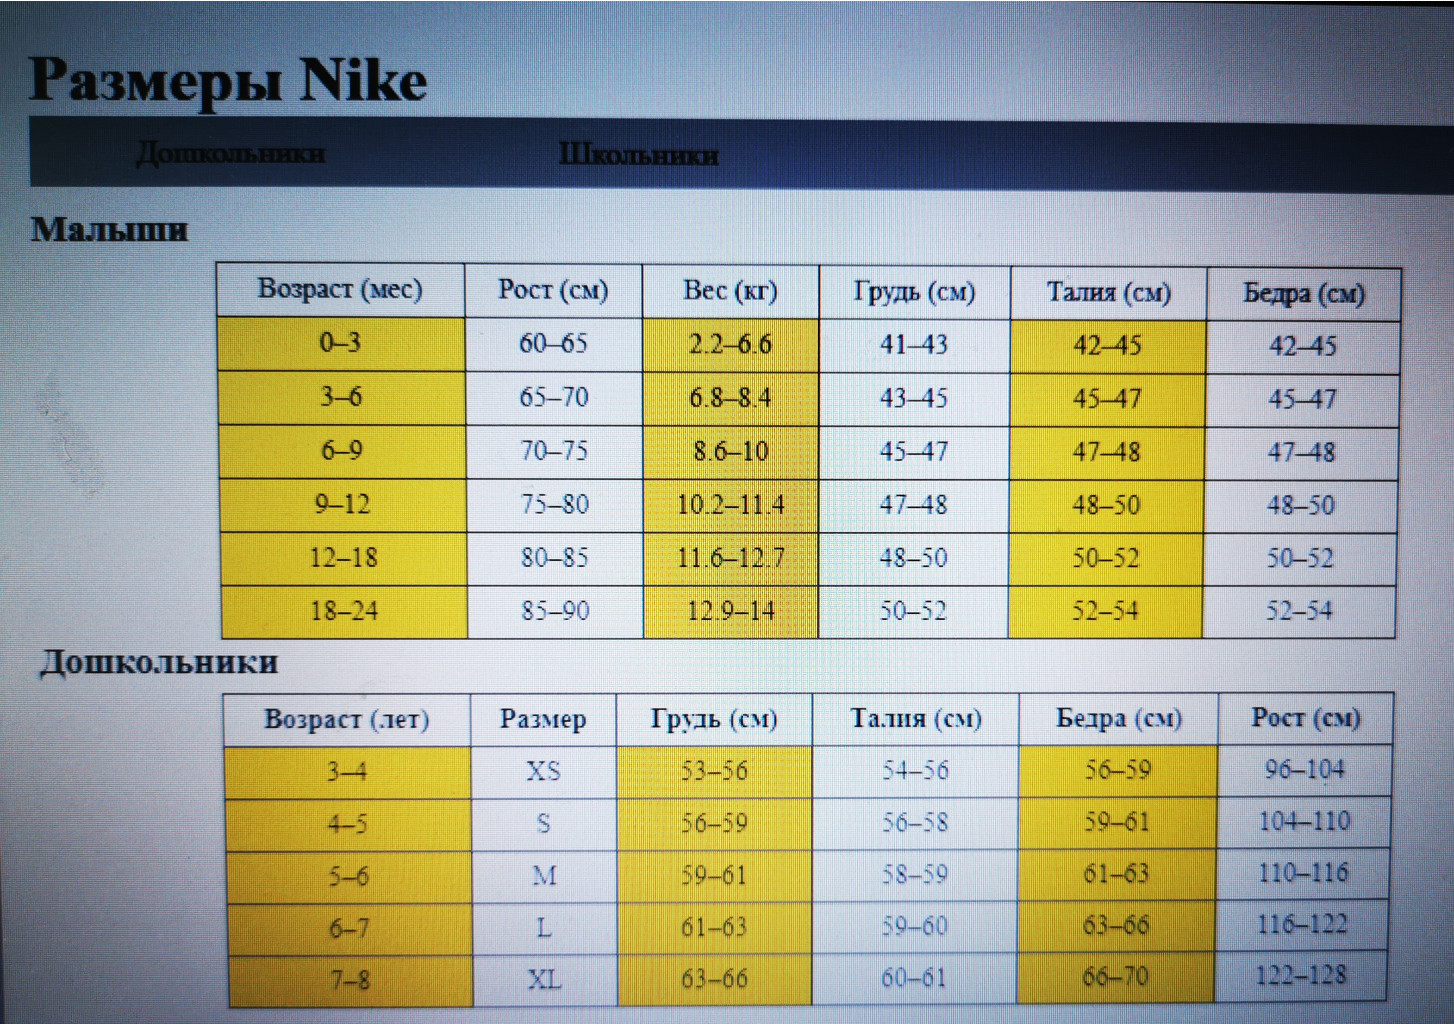   Nike